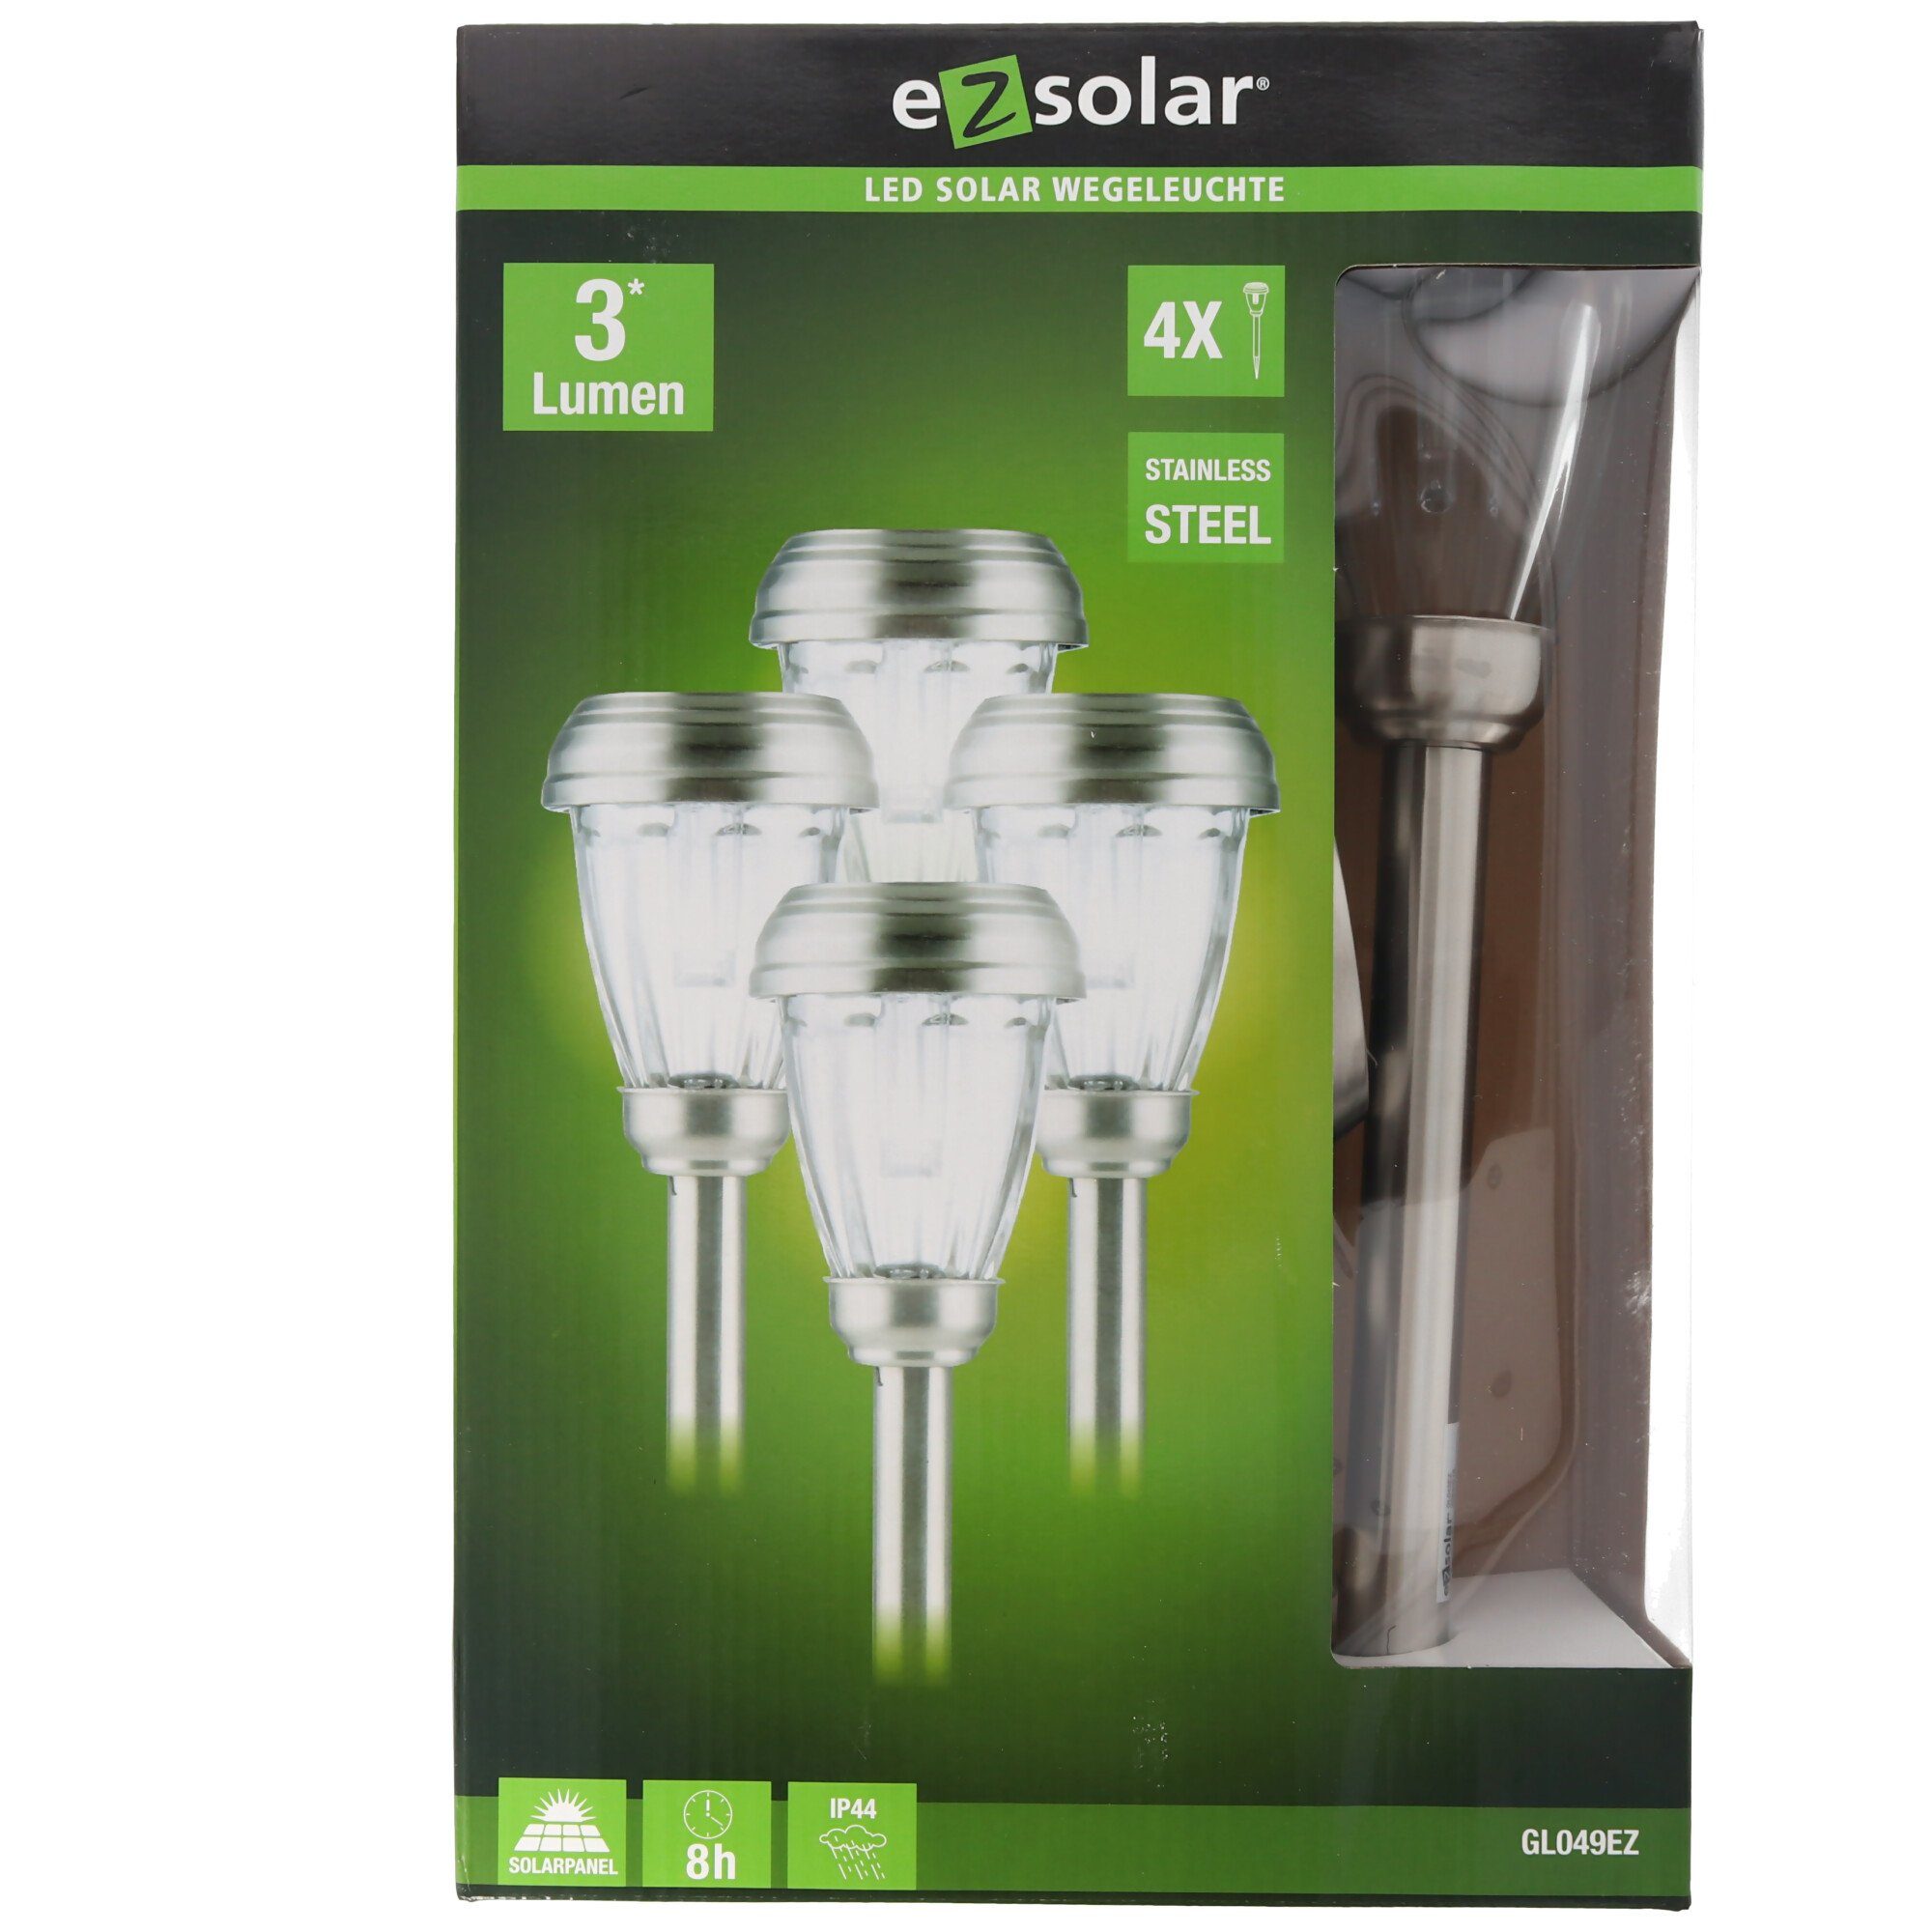 Duracell ® LED Solar Wegeleuchte 15 Lumen aus Edelstahl und Glas Rund 